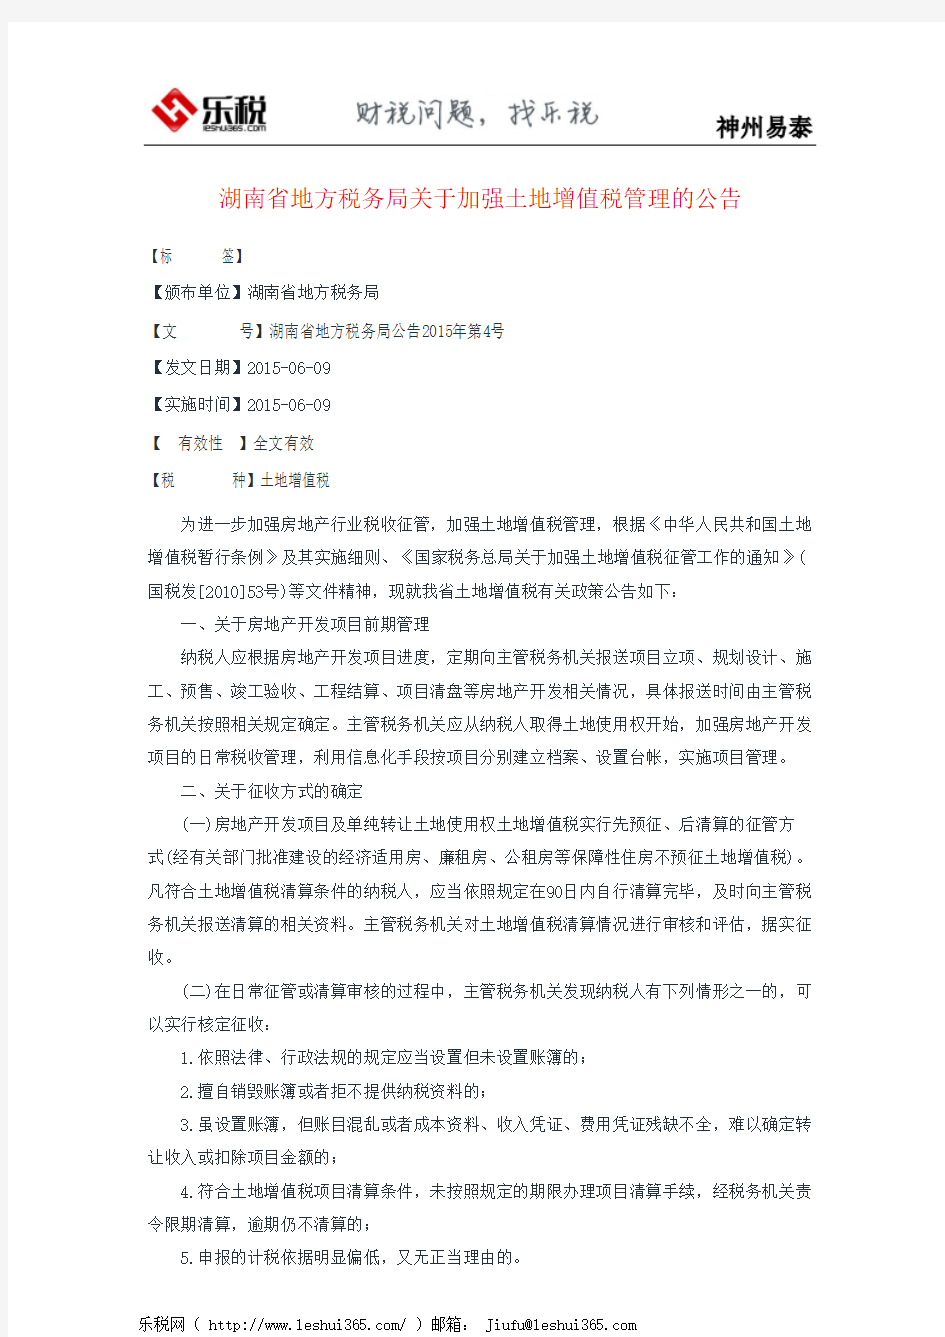 湖南省地方税务局关于加强土地增值税管理的公告